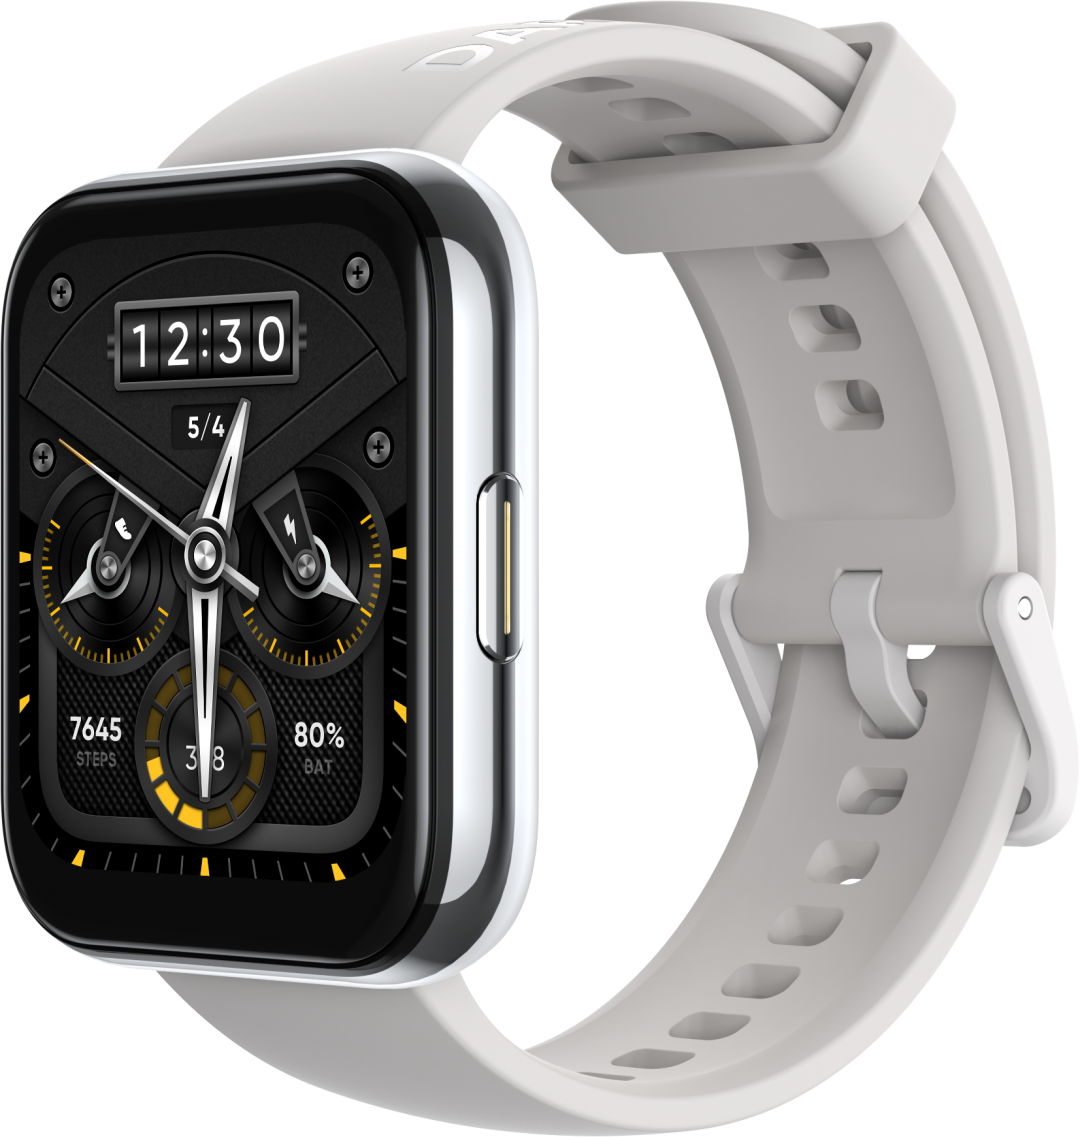 realme presenta al smartwatch Watch 2 Pro y el robot aspiradora realme TechLife 